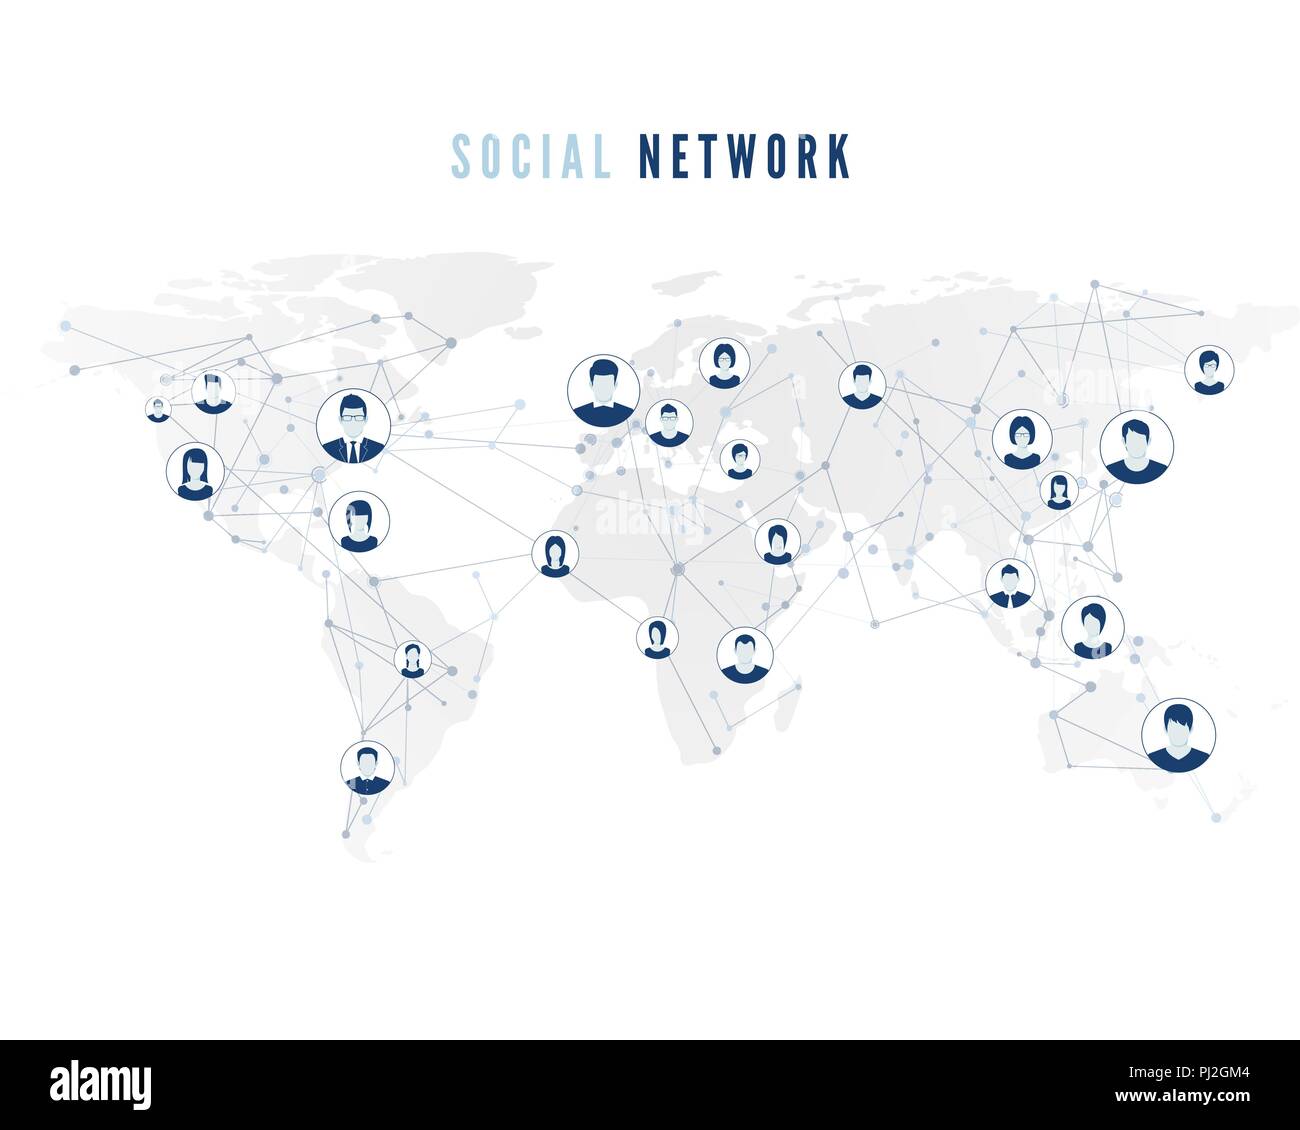 Globale soziale Netzwerk Verbindung auf Weltkarte Hintergrund. Benutzer Avatare zum World Wide-Netzwerk verbunden. Internet Konzept. Vector Illustration Stock Vektor